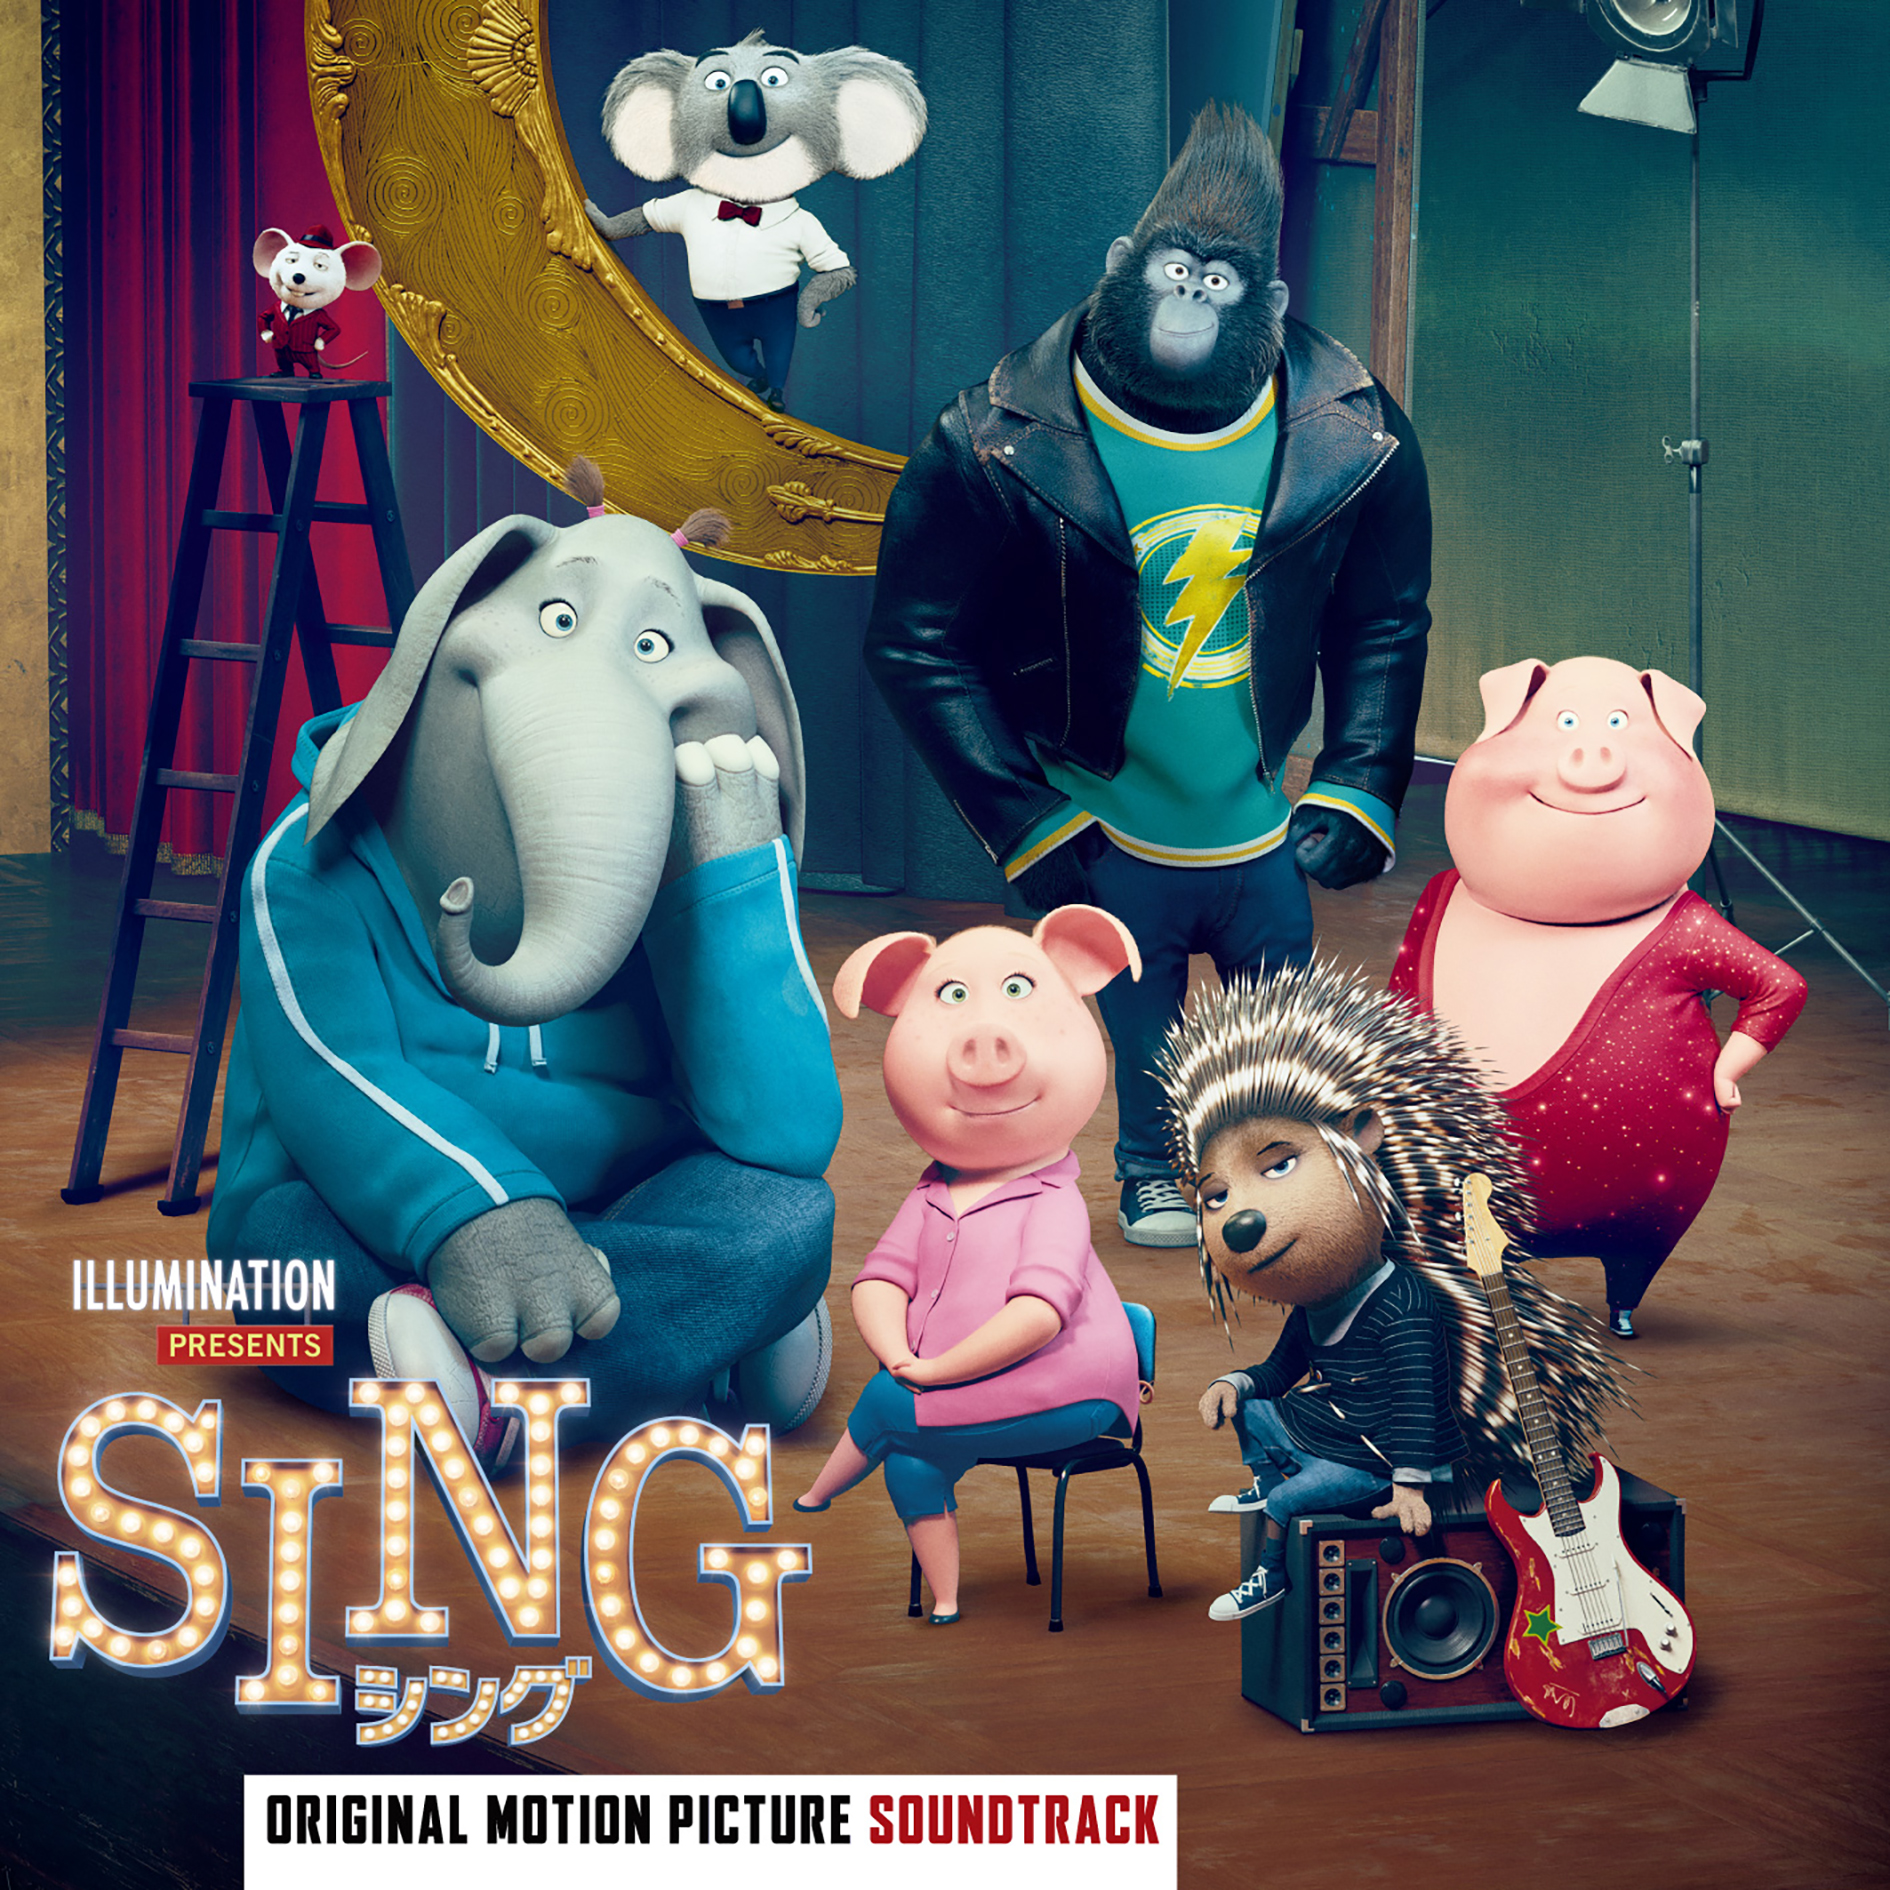 話題の映画 Sing シング のサウンドトラック 3月15日発売 ユニバーサル ミュージック合同会社のプレスリリース